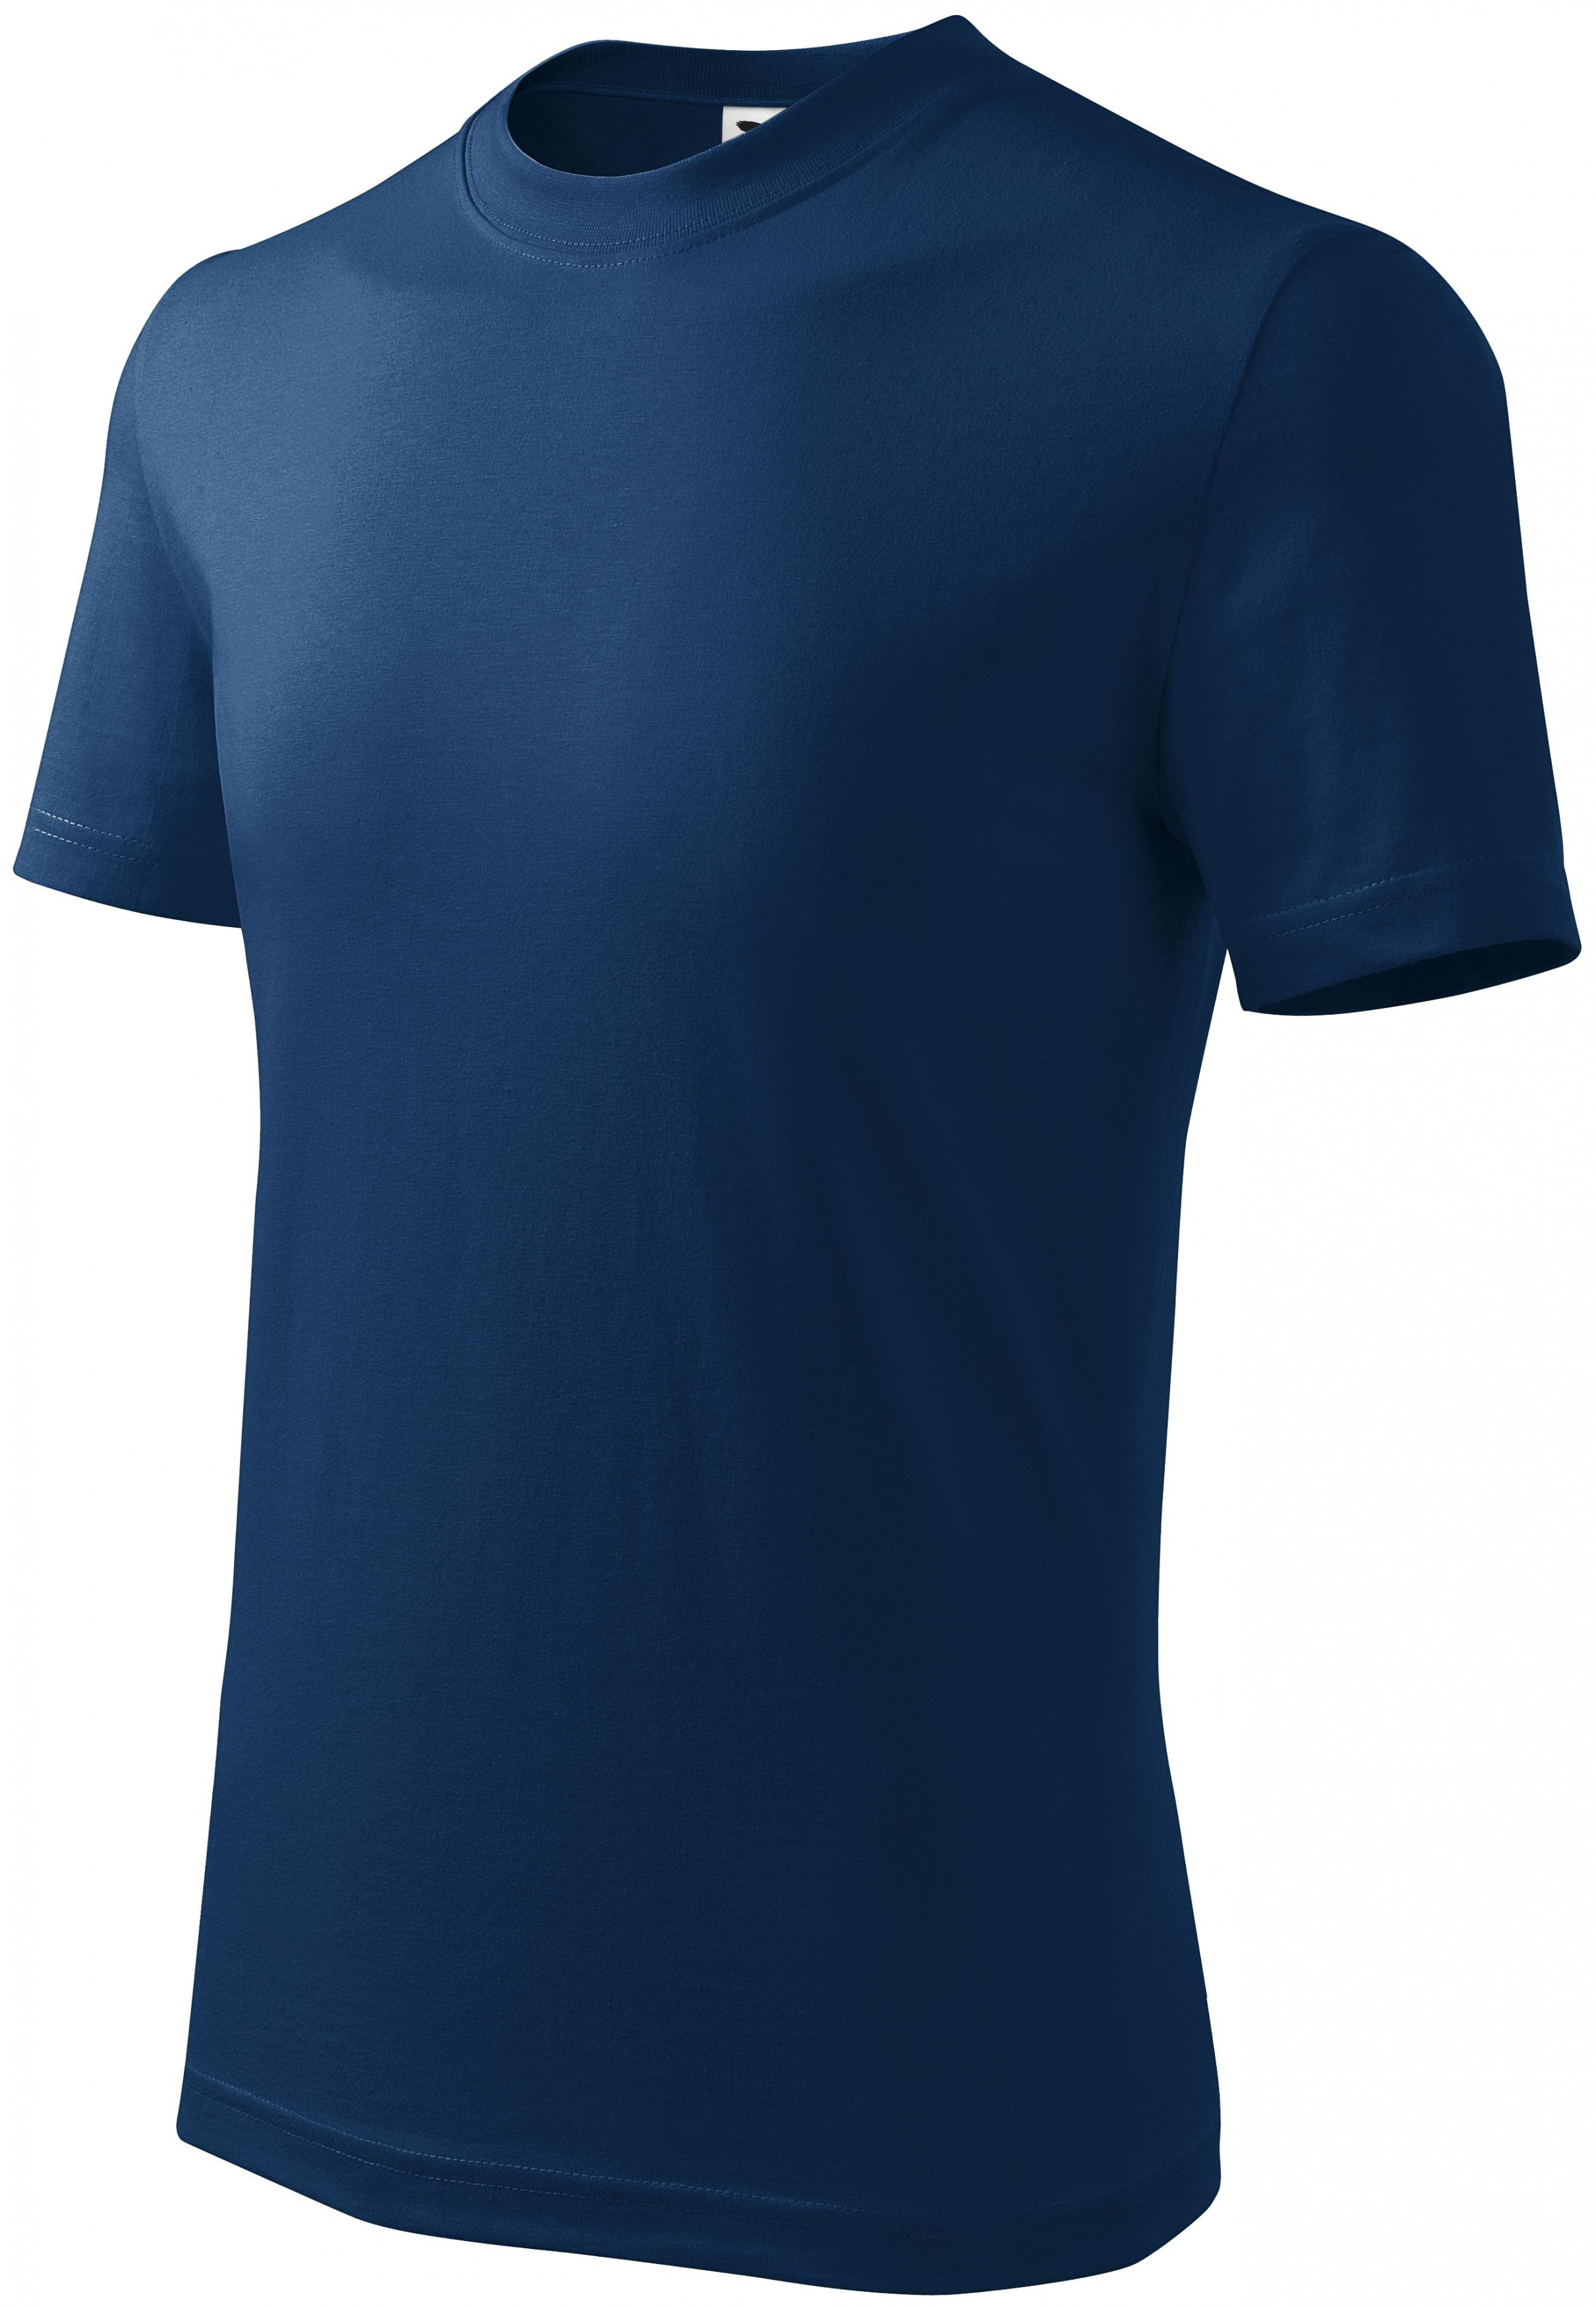 Detské tričko jednoduché, polnočná modrá, 158cm / 12rokov